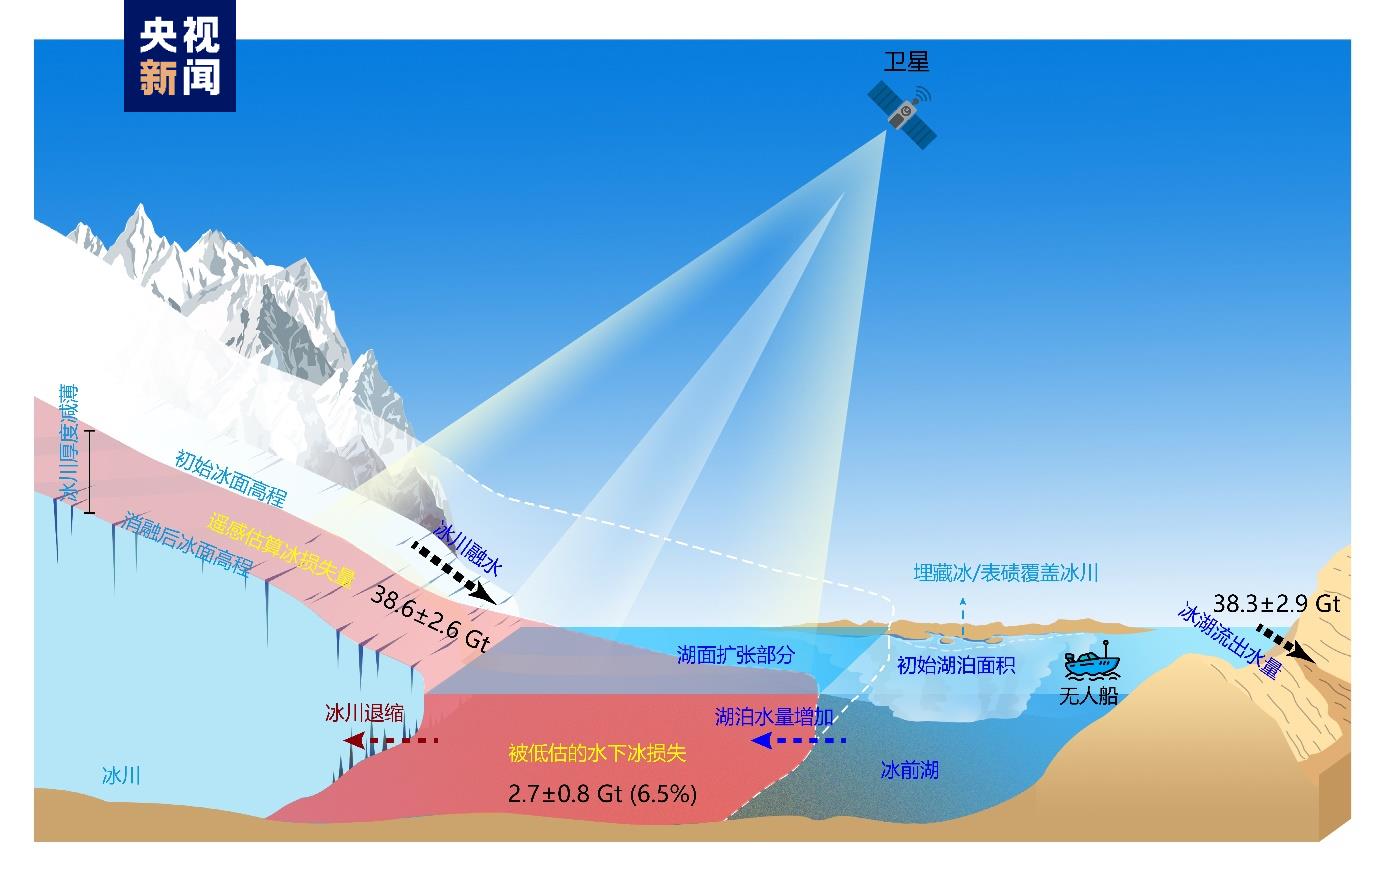 钻研表明喜马拉雅冰湖水下冰损失被低估—往事—迷信网